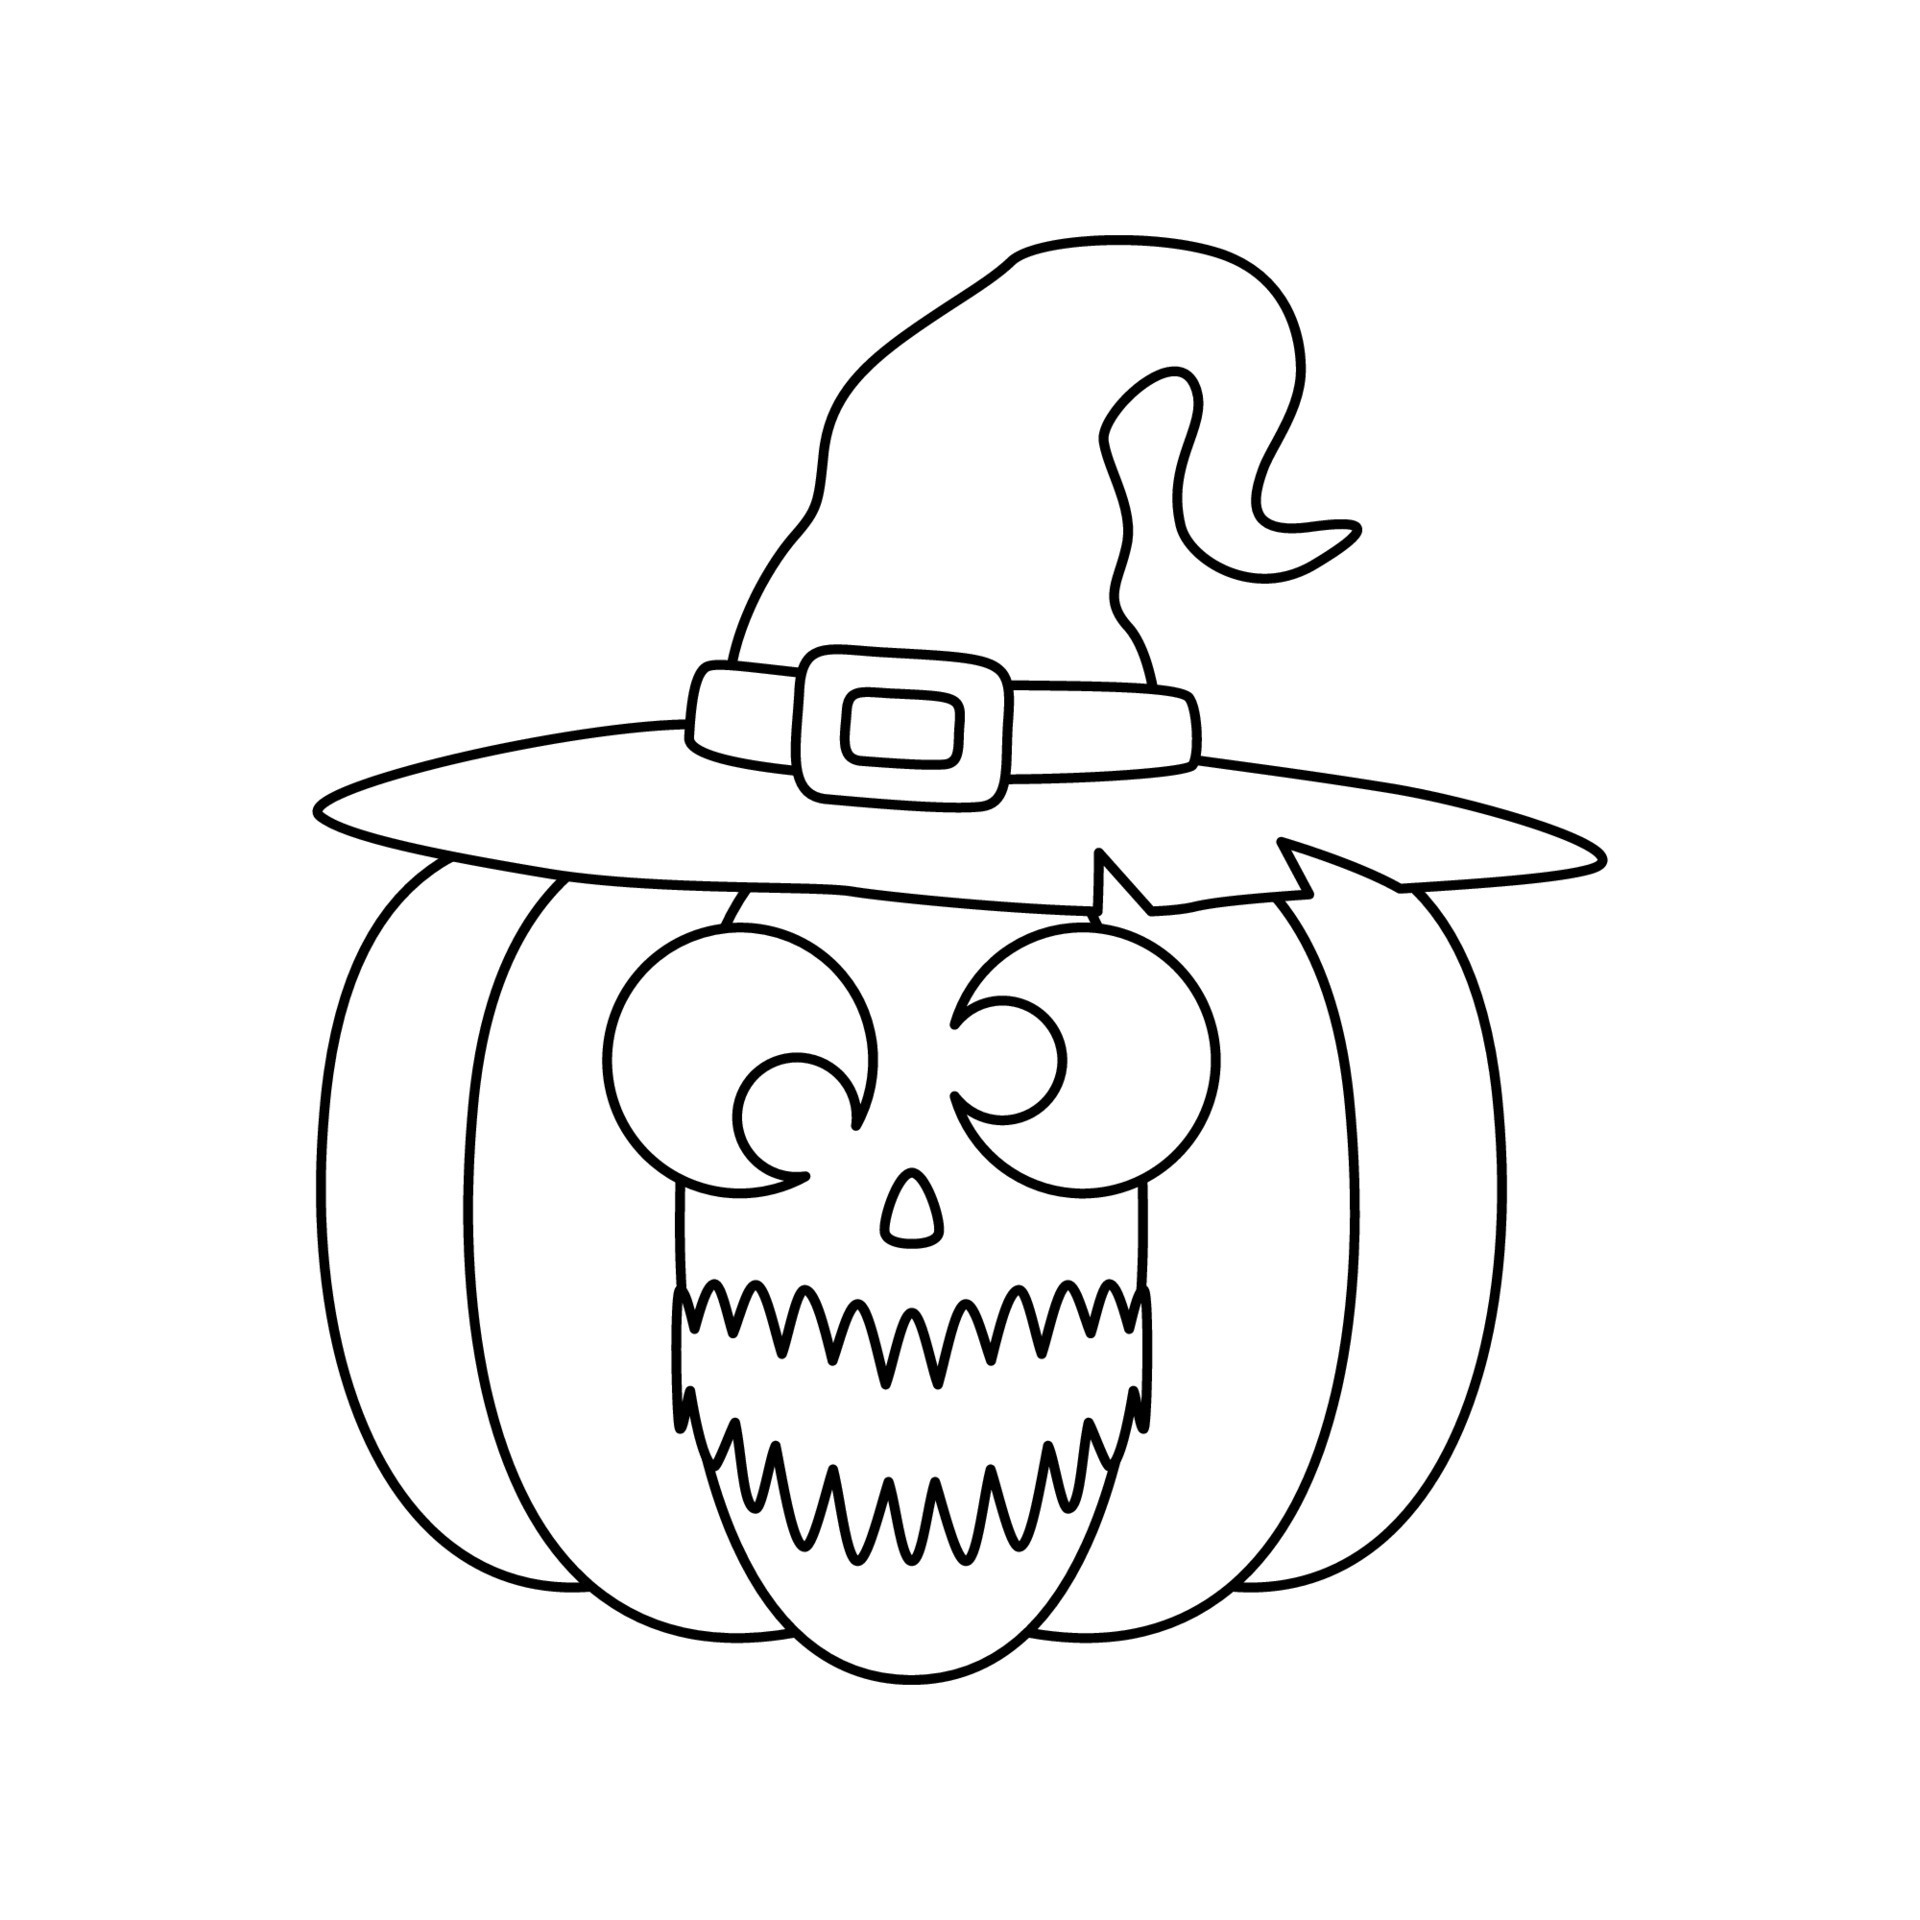 desenho de abóbora de halloween 2 camadas para colorir para crianças  7528043 Vetor no Vecteezy